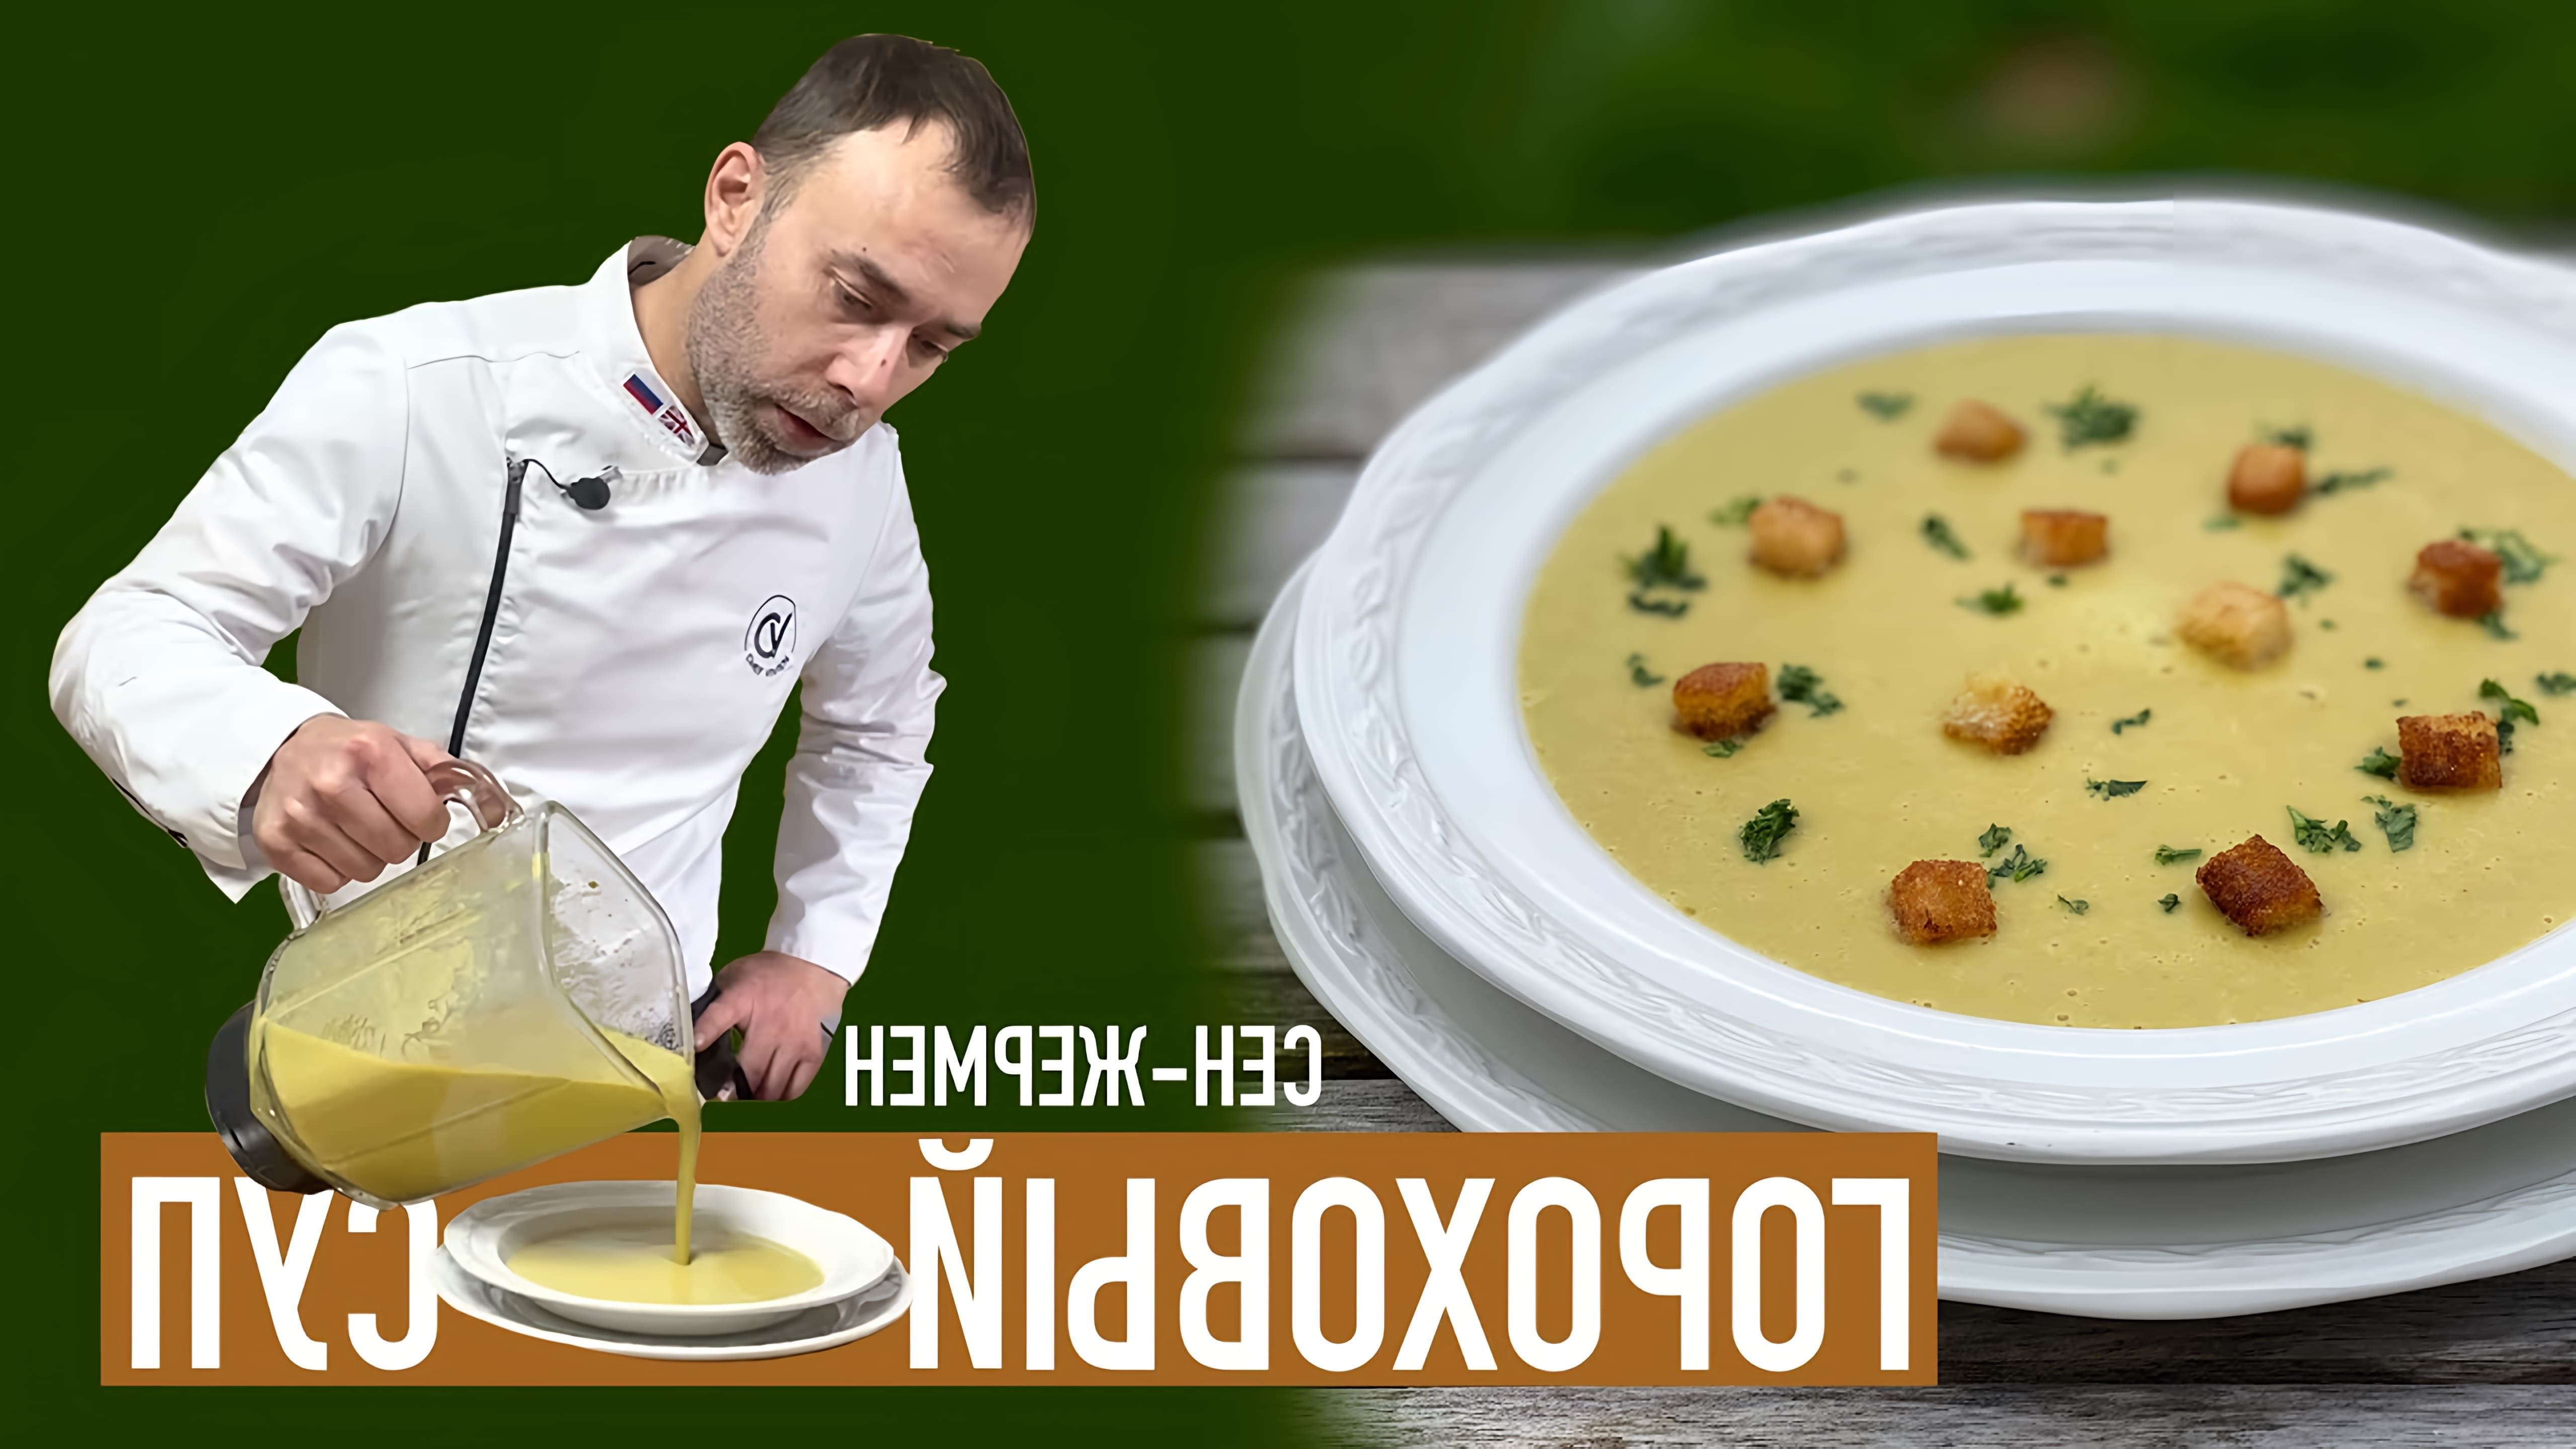 В этом видео демонстрируется процесс приготовления горохового супа по традиционному французскому рецепту